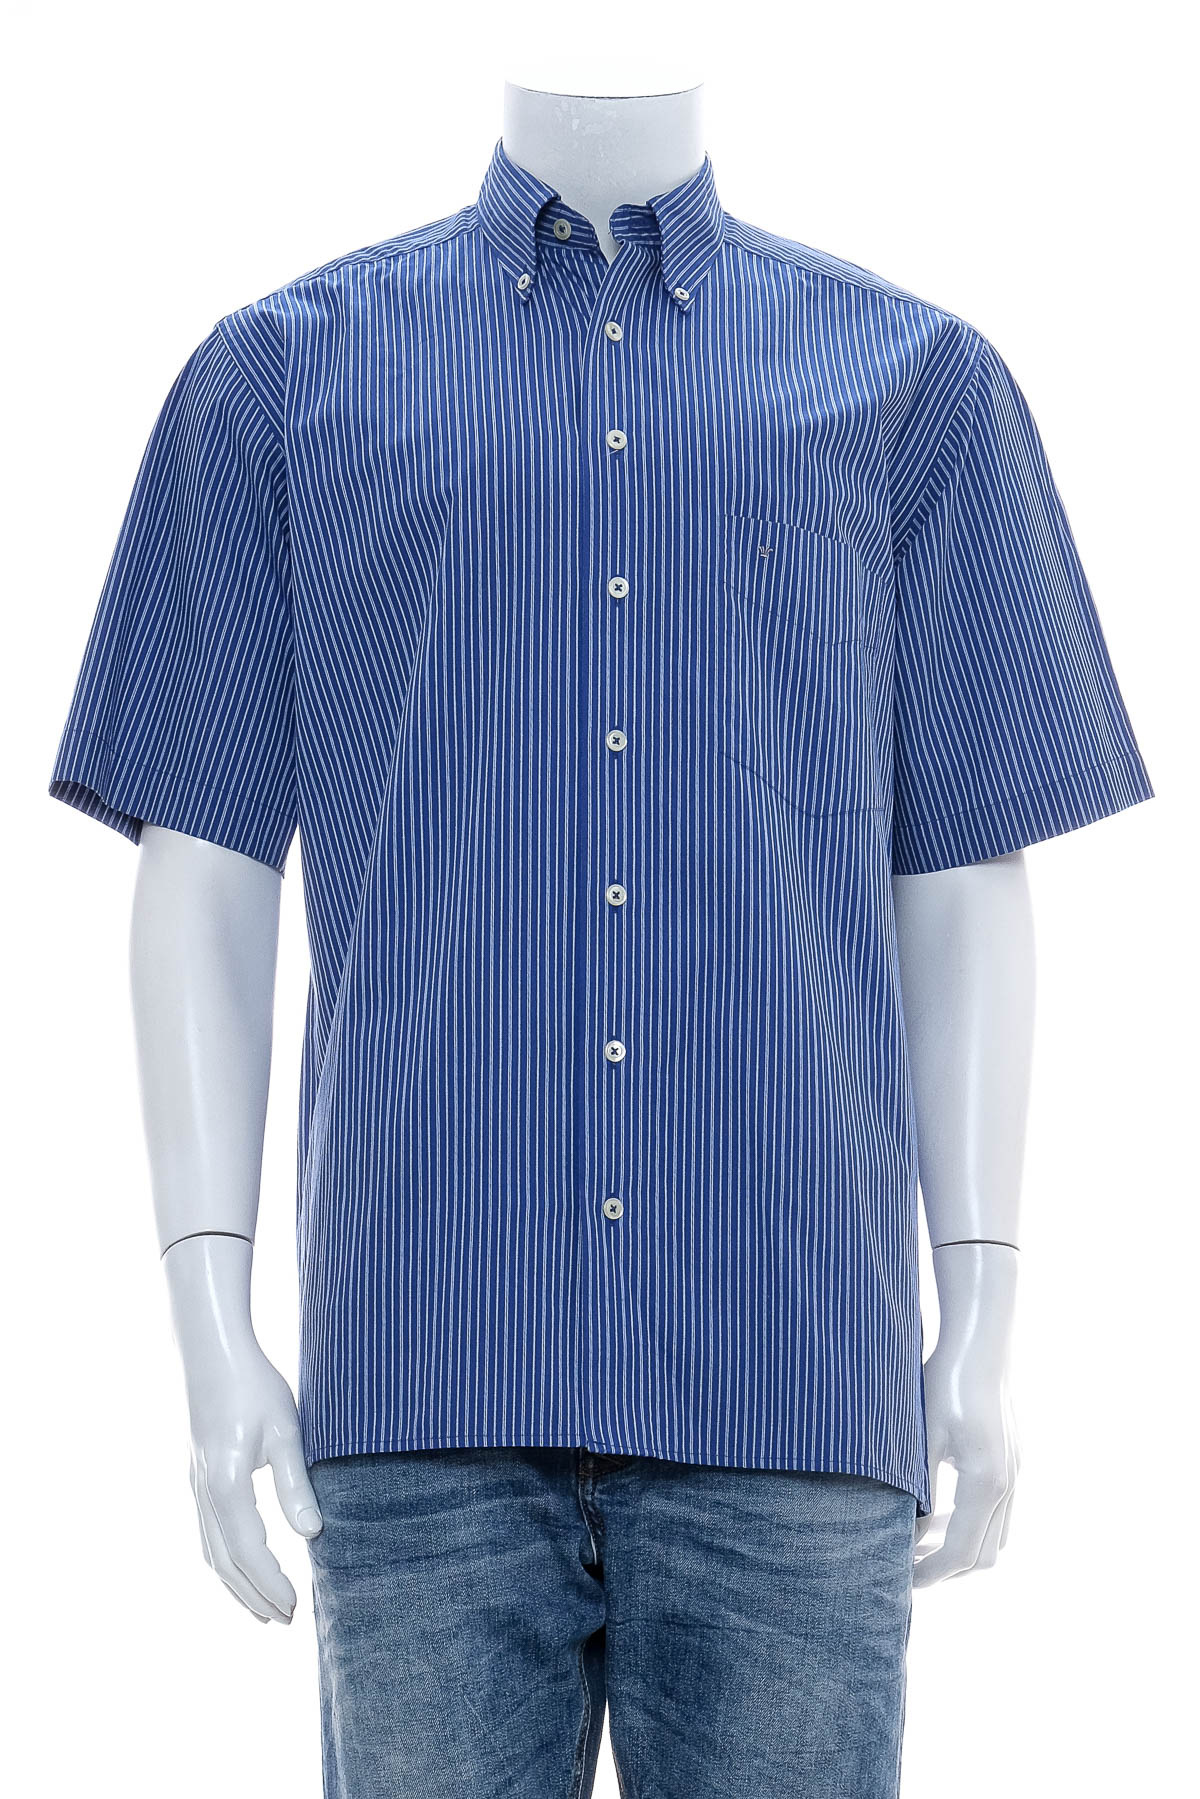 Ανδρικό πουκάμισο - SEIDEN STICKER - 0